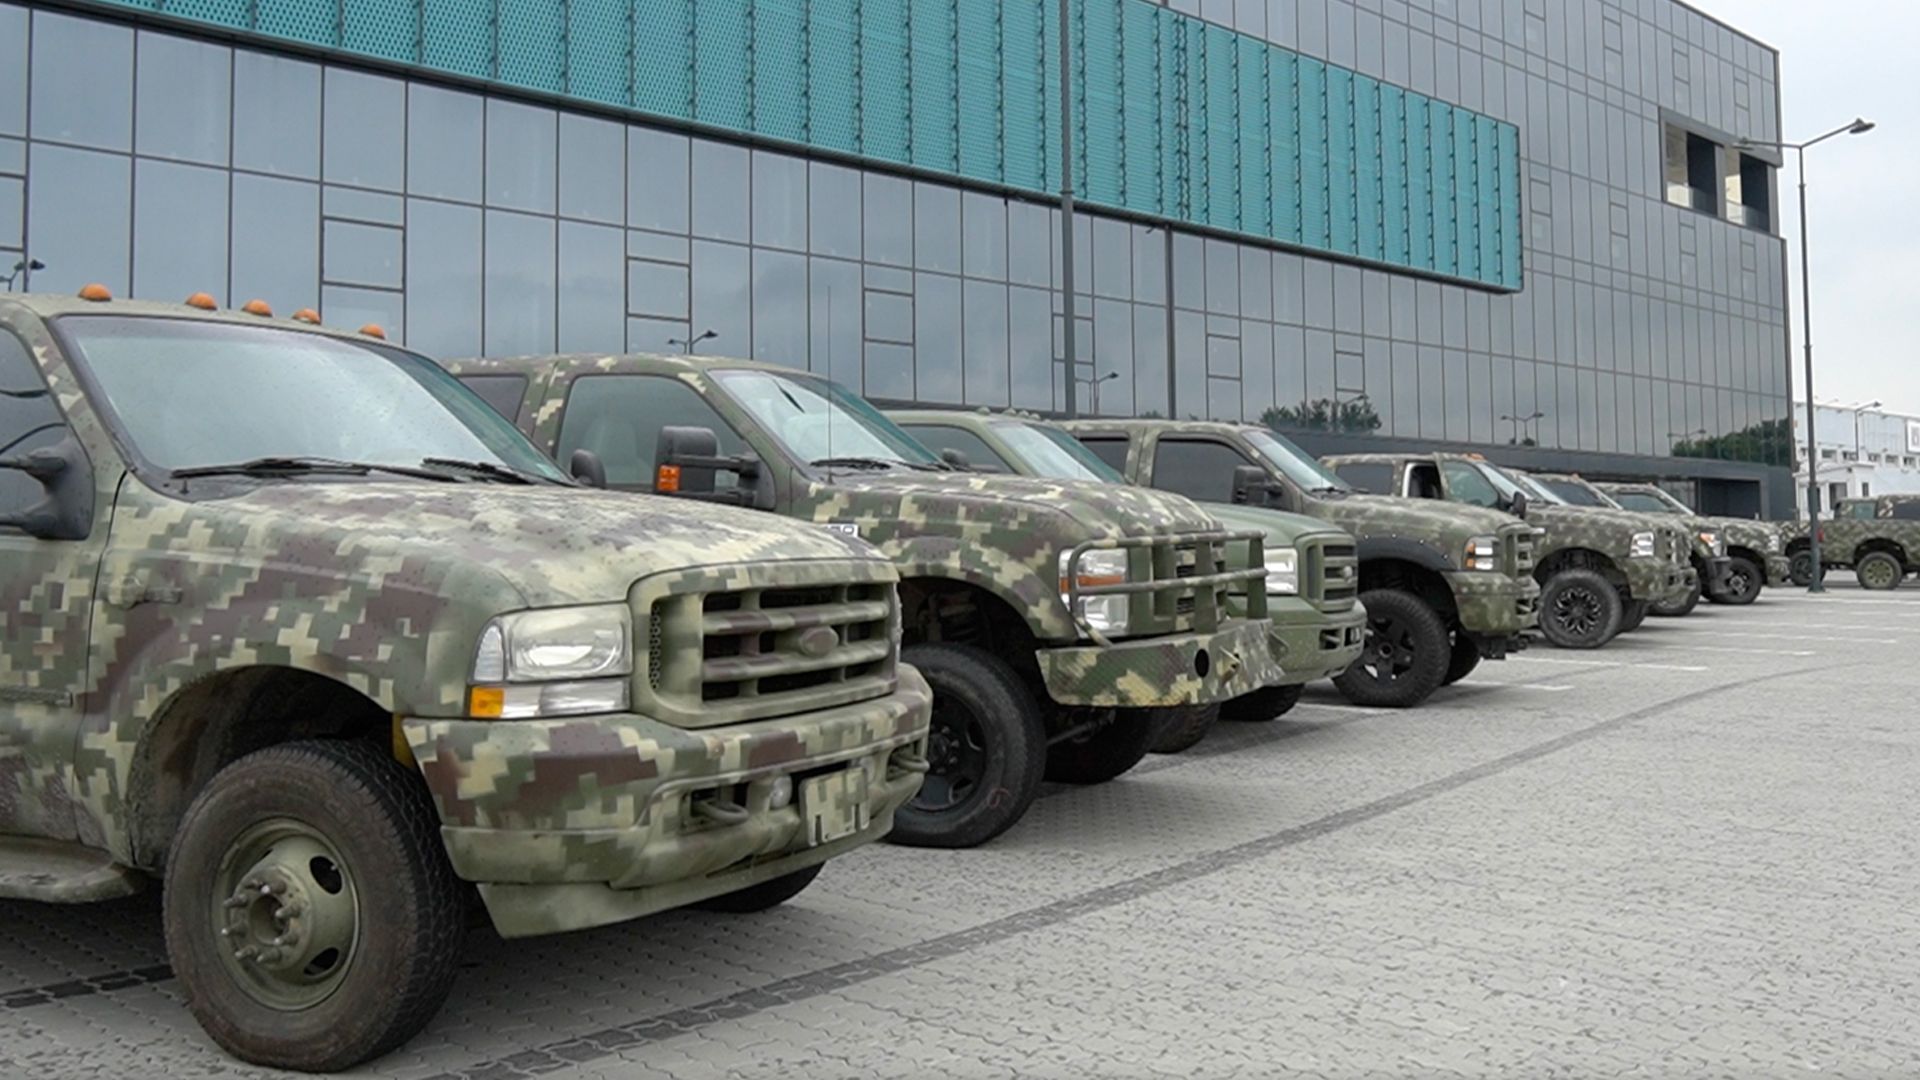 Благотворительный проект "Герой Car" передал военным новую партию внедорожников